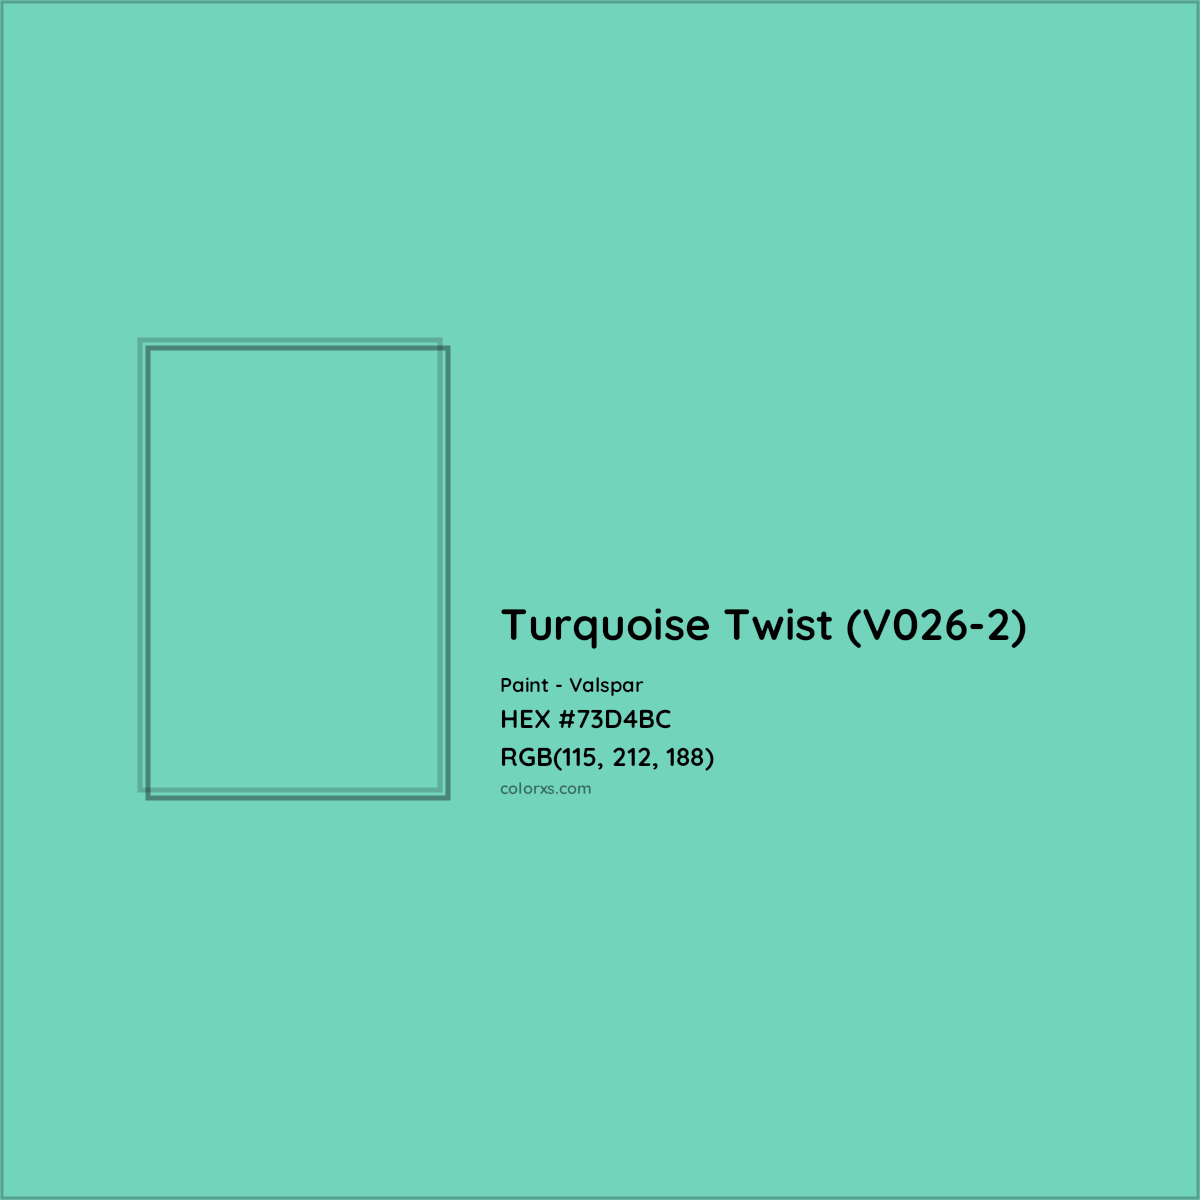 HEX #73D4BC Turquoise Twist (V026-2) Paint Valspar - Color Code